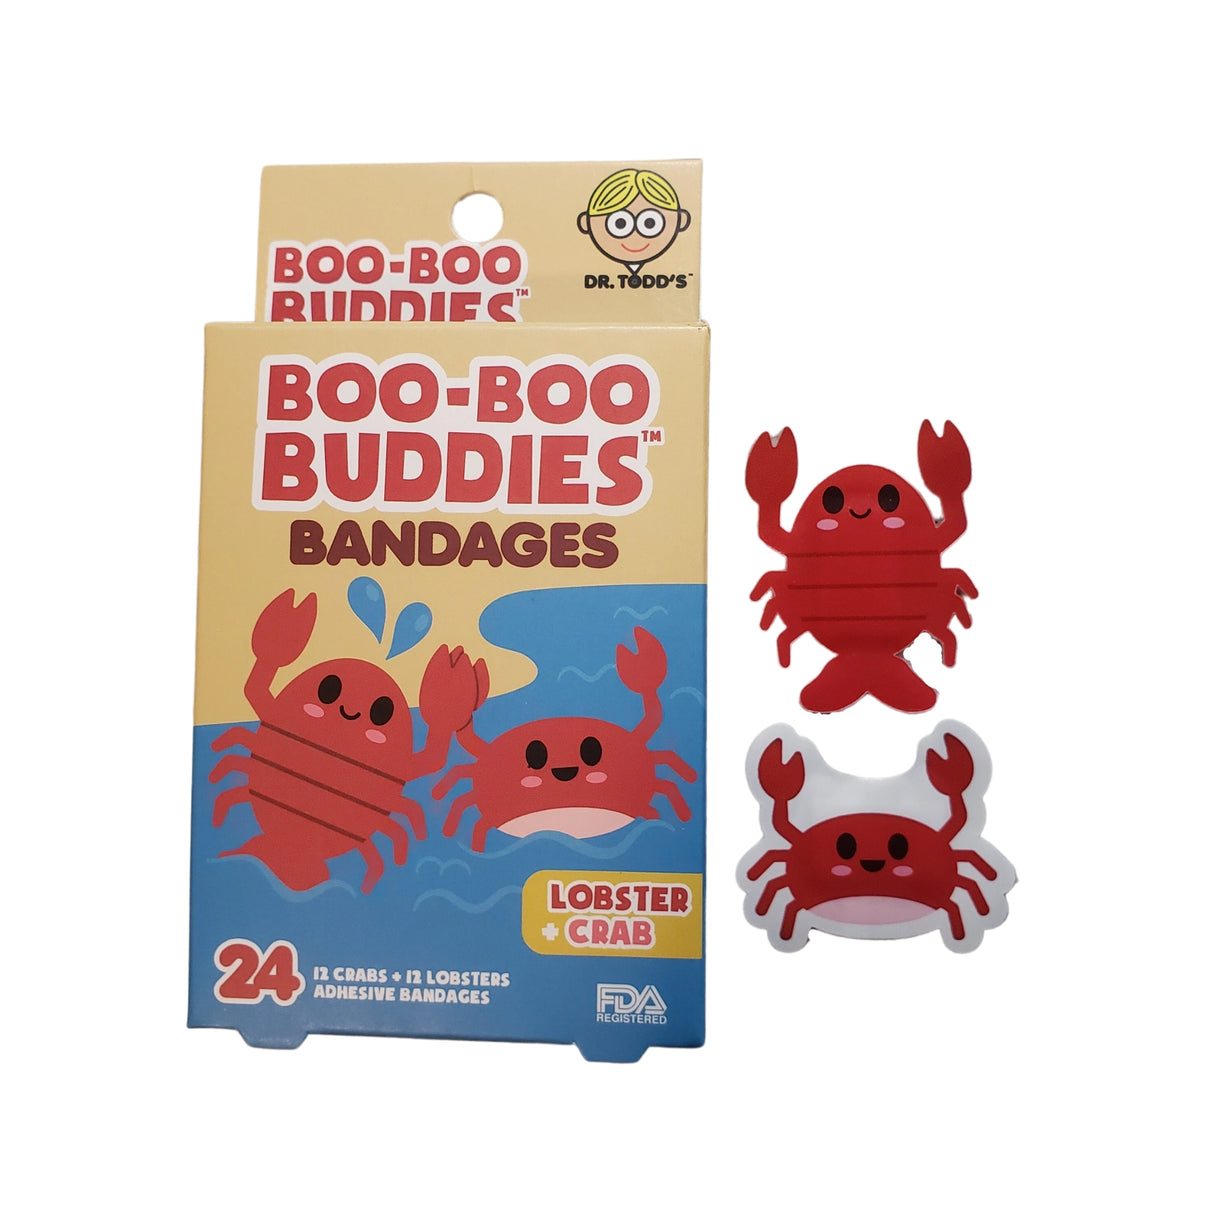 Lobster & Crab Bandages